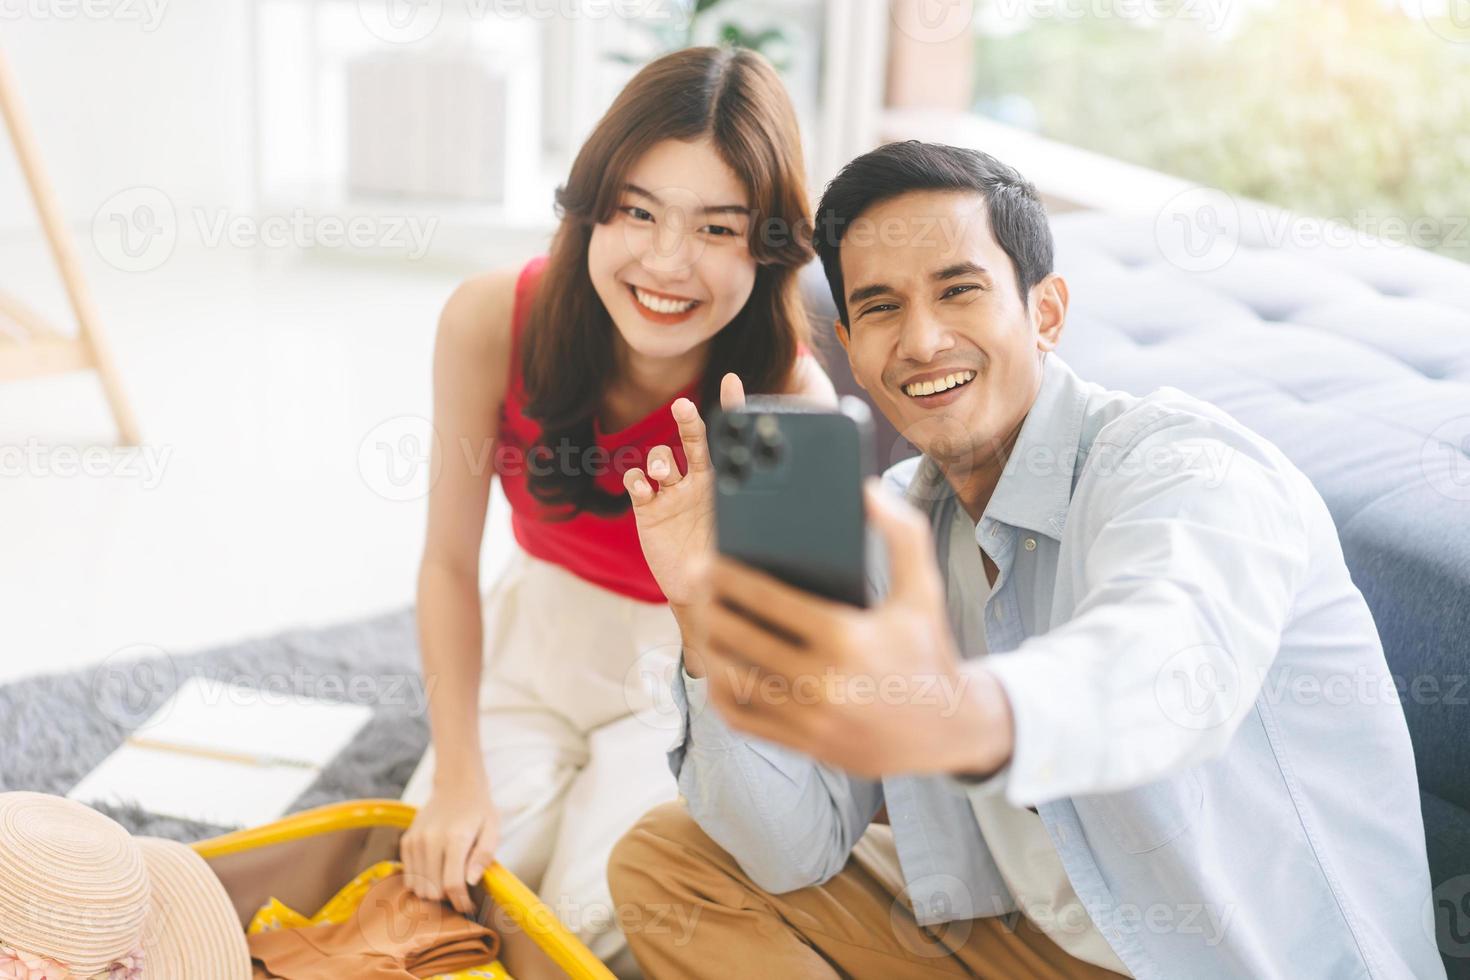 jovem adulto casal do sudeste asiático selfie juntos para carregar as mídias sociais da internet antes da viagem foto